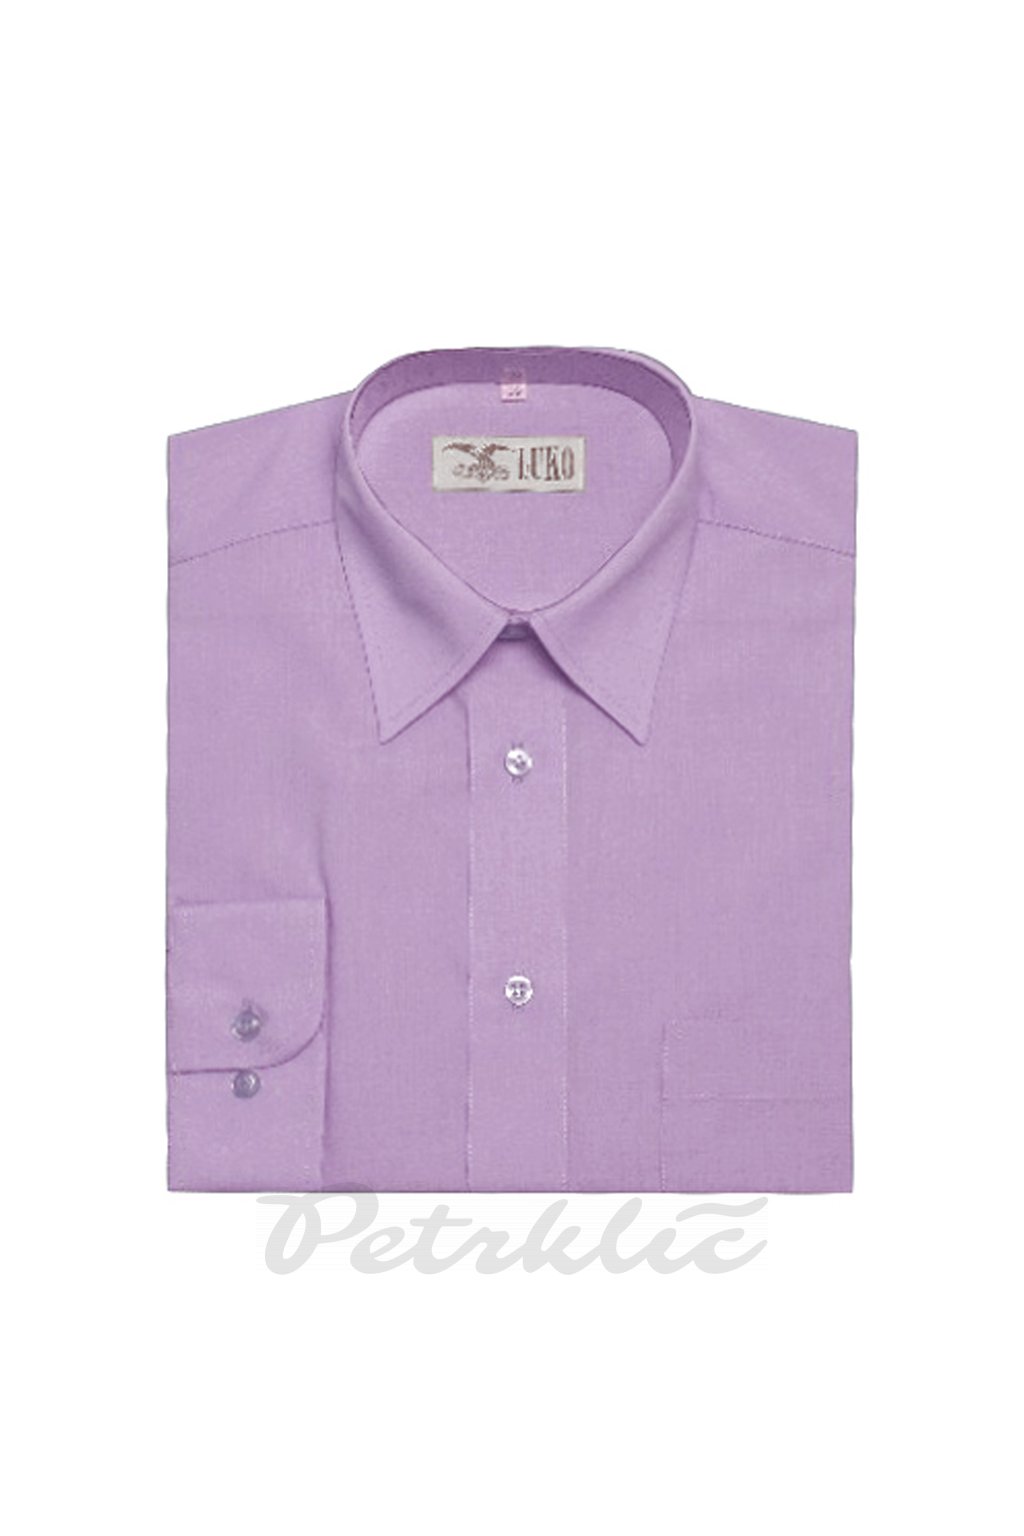 Pánská košile krátký rukáv - 1:1 bavlna a polyester